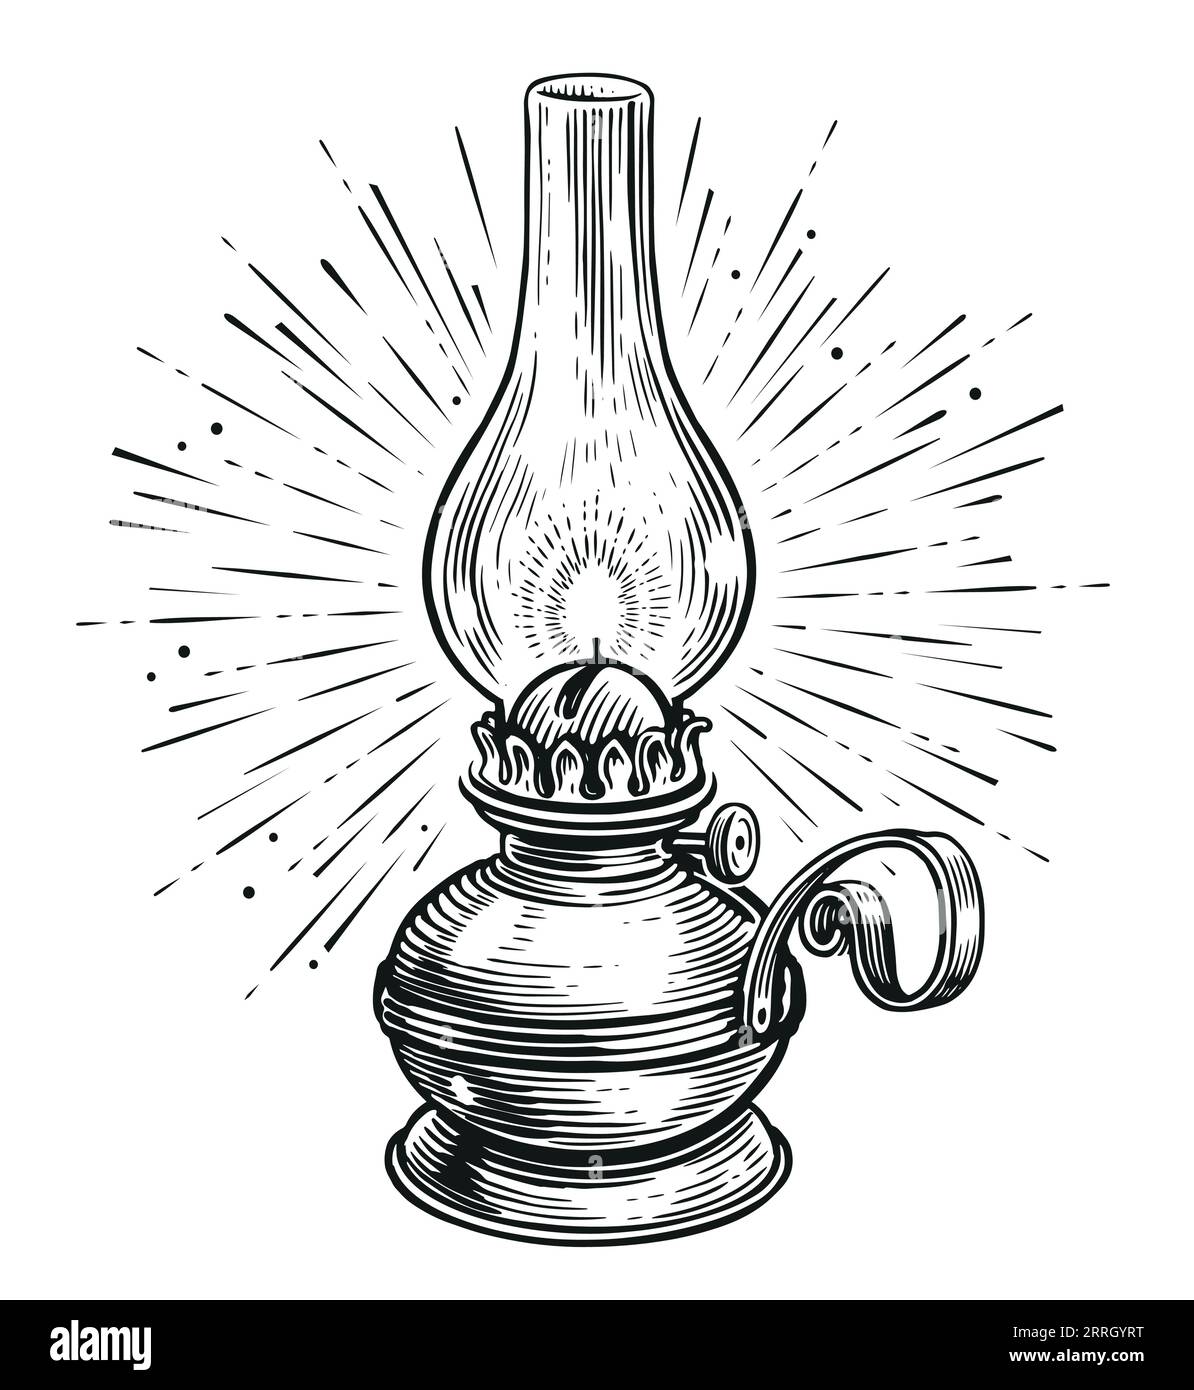 Lanterna a olio d'epoca o lampada a cherosene con raggi di luce. Disegno vettoriale della vecchia lampada a olio stile di incisione Illustrazione Vettoriale